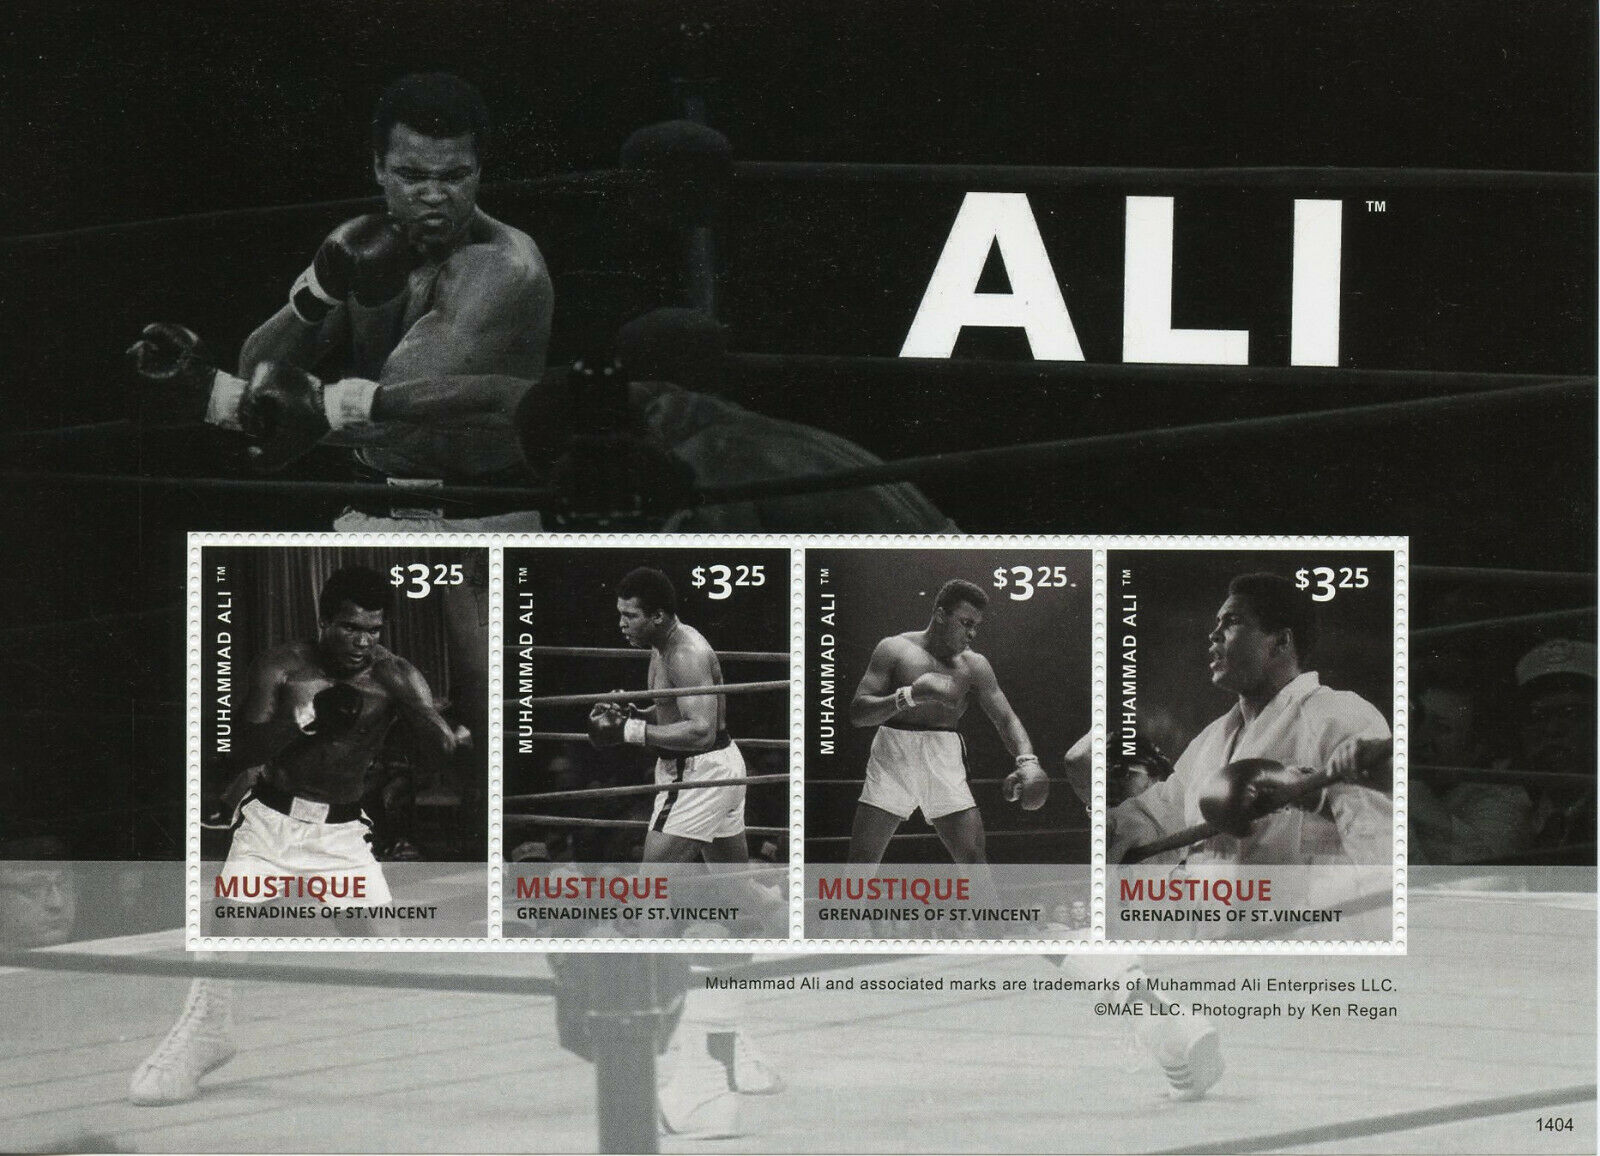 Mustique Gren St Vincent Boxing Stamps 2014 MNH Muhammad Ali 4v M/S II